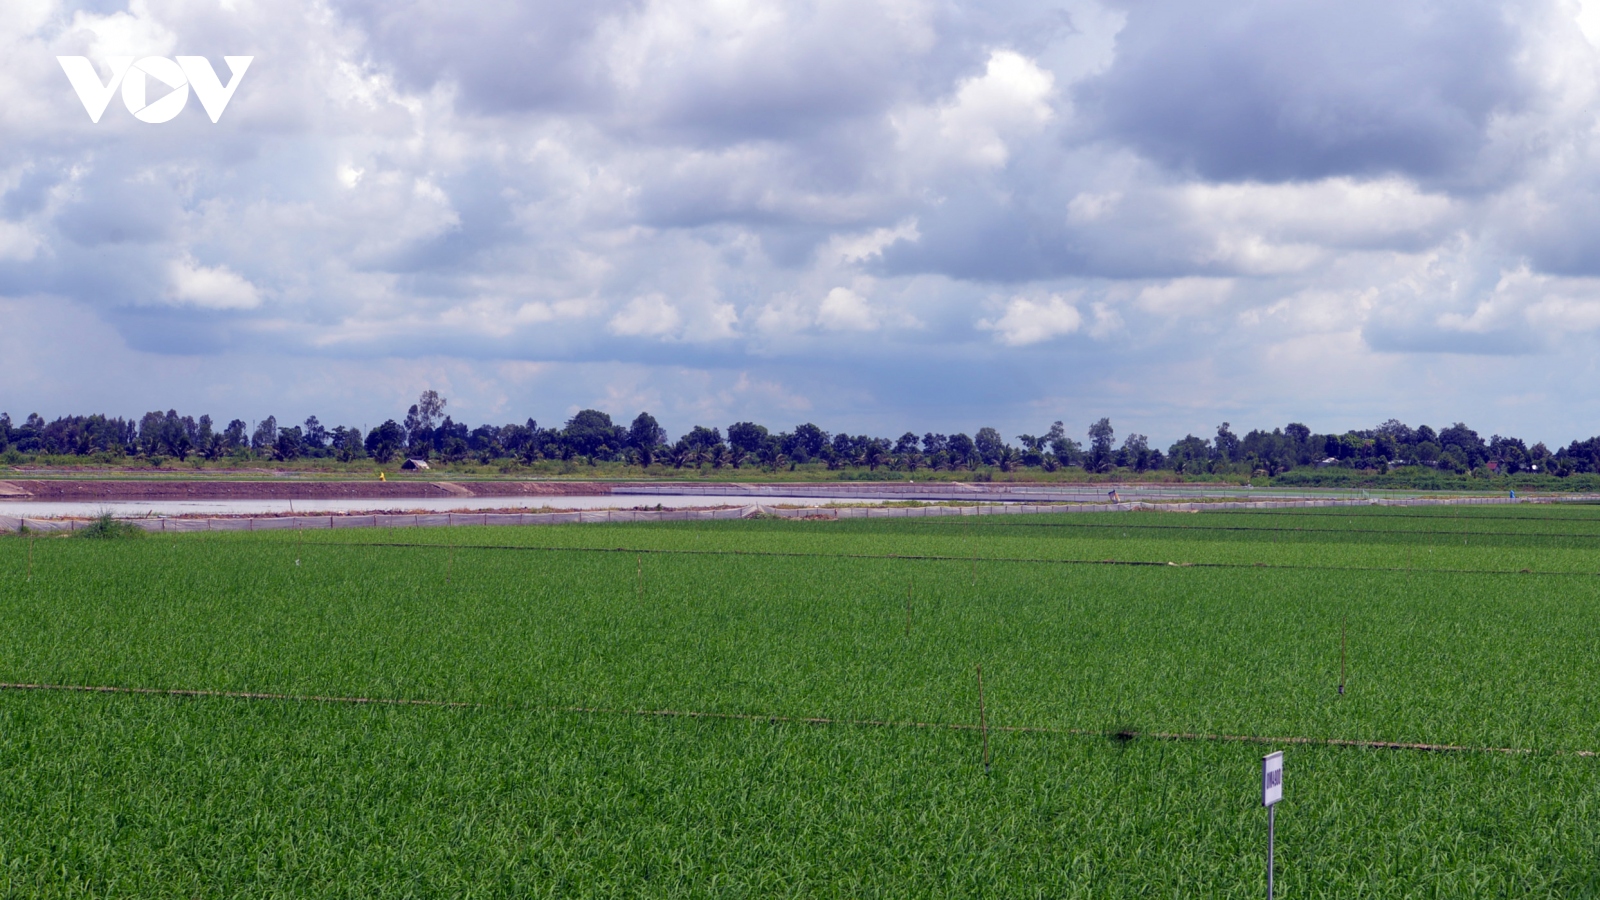 Tránh hạn mặn, ĐBSCL chọn mức độ an toàn trong sản xuất lúa Đông Xuân